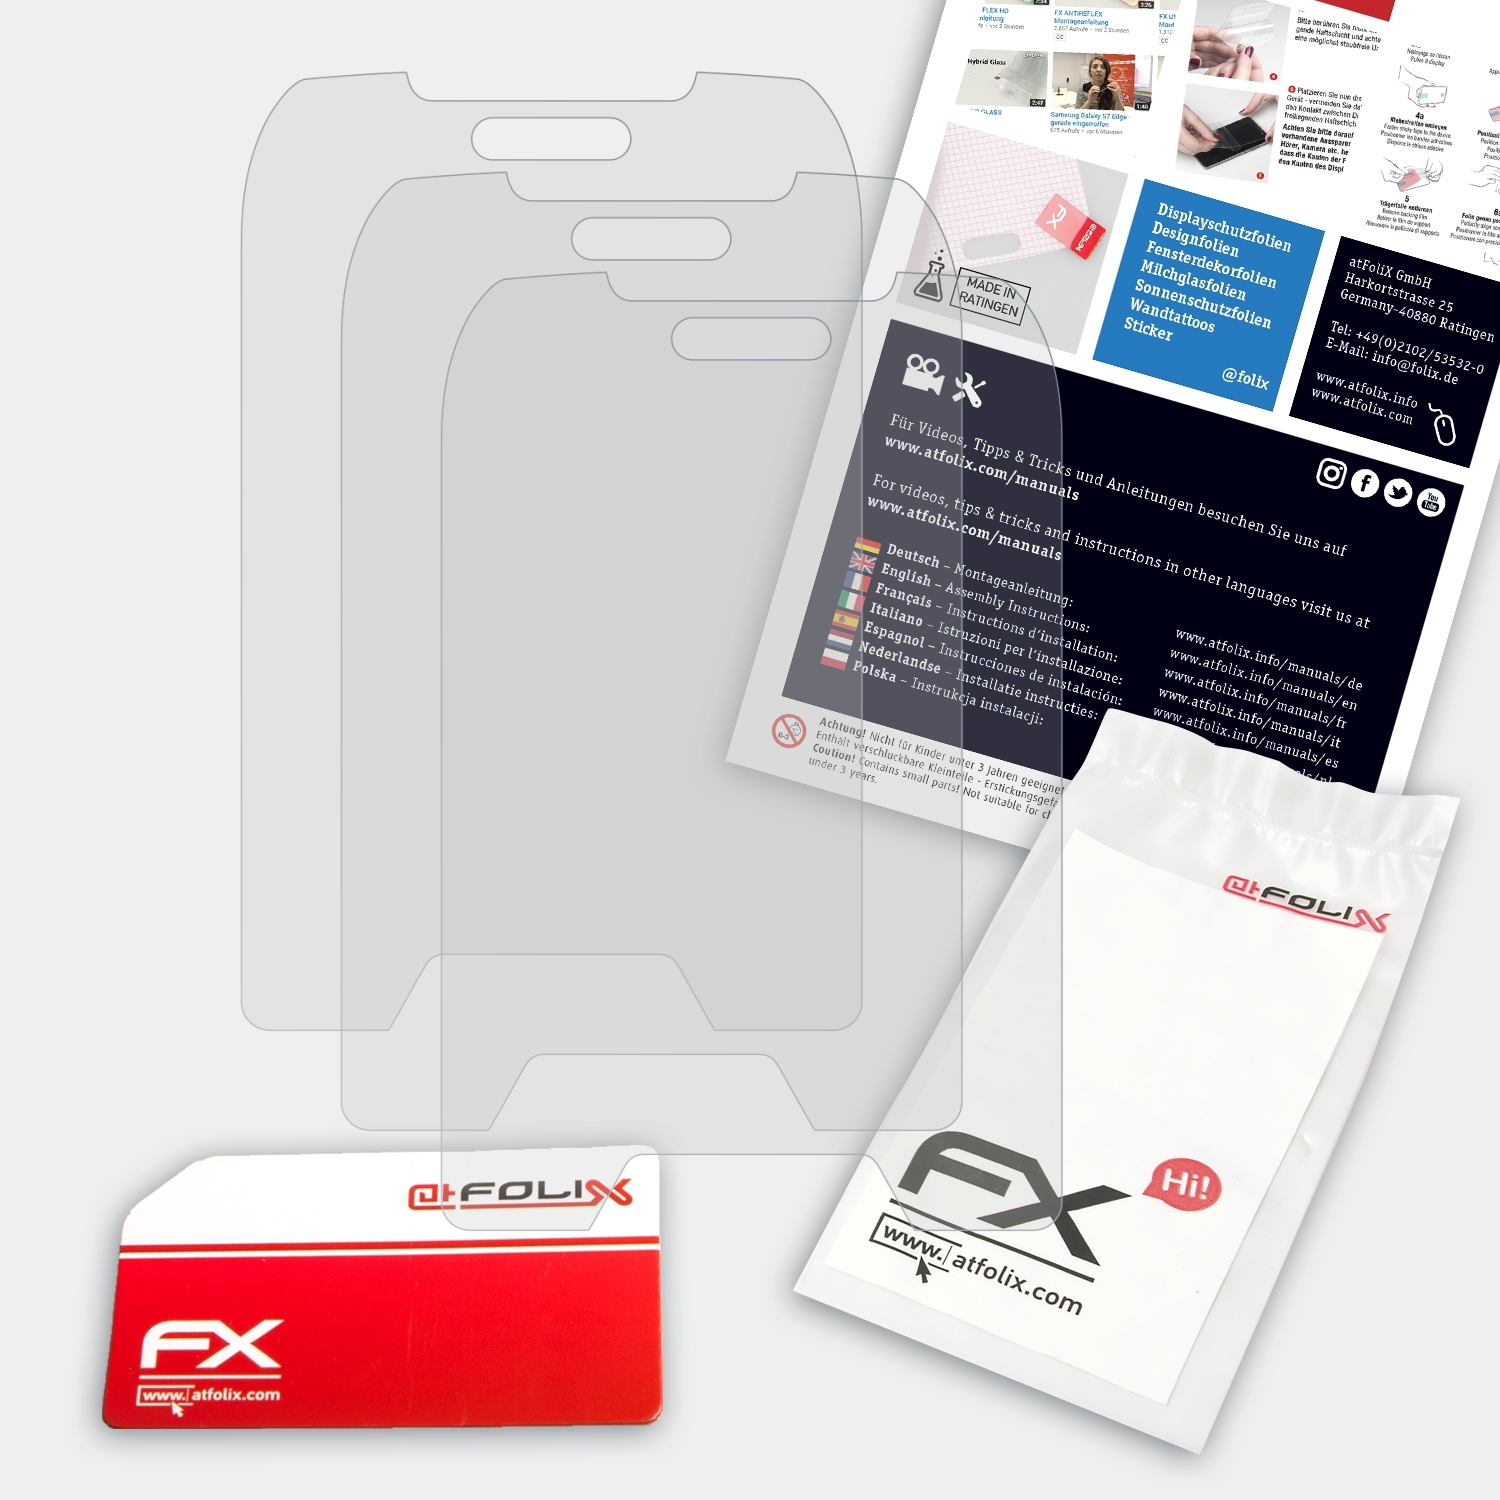 ATFOLIX 3x Displayschutz(für FX-Antireflex Energizer Hardcase H240S)